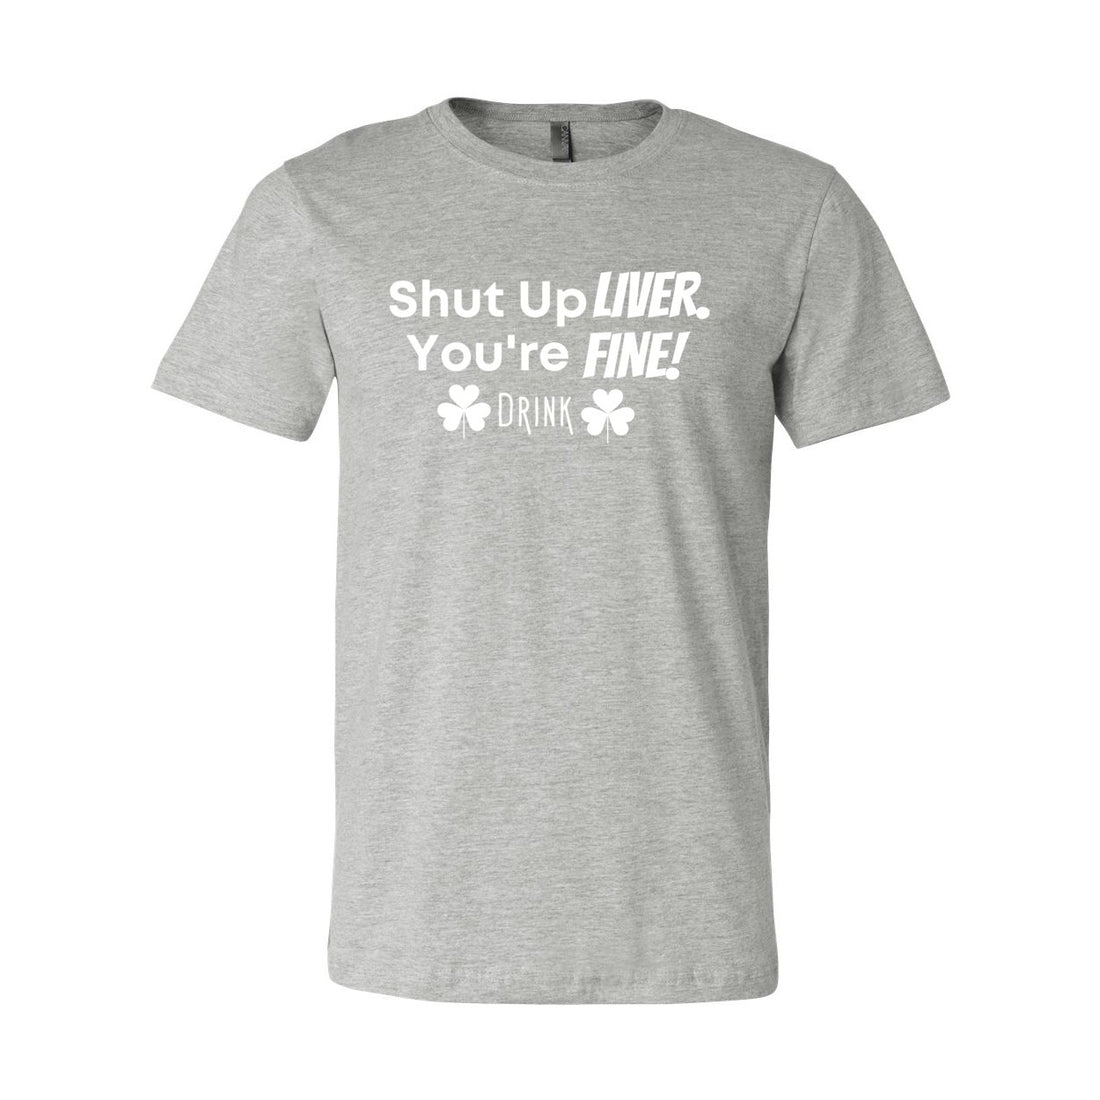 Shut Up Liver Short Sleeve Jersey Tee - T-Shirts - Positively Sassy - Shut Up Liver Short Sleeve Jersey Tee